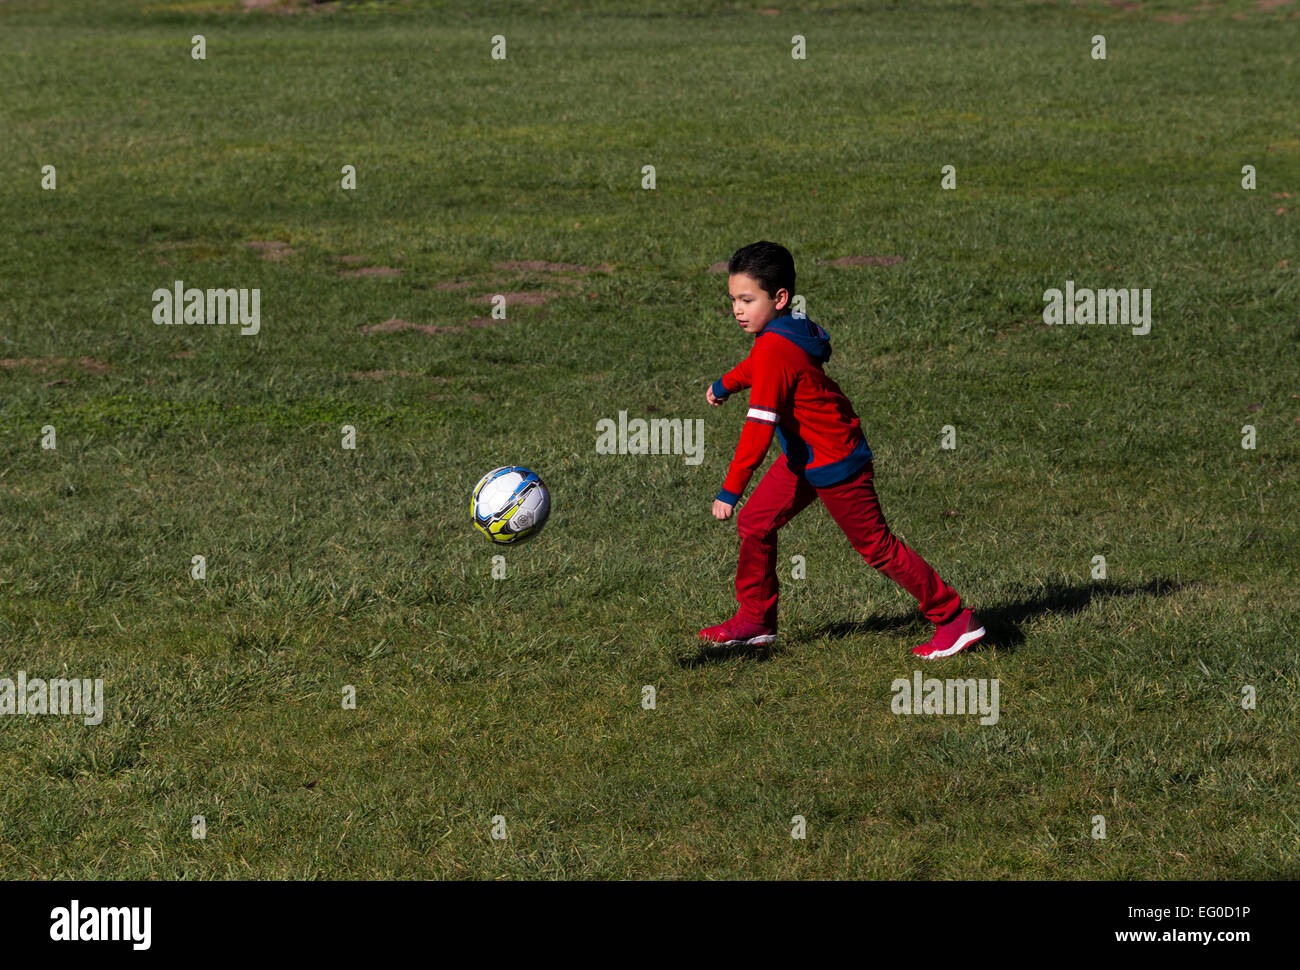 Young Hispanic boy apprendre à jouer au soccer à coups de ballon de soccer tout en jouant au football dans la région de Pioneer Park dans la ville de Novato, Californie Banque D'Images